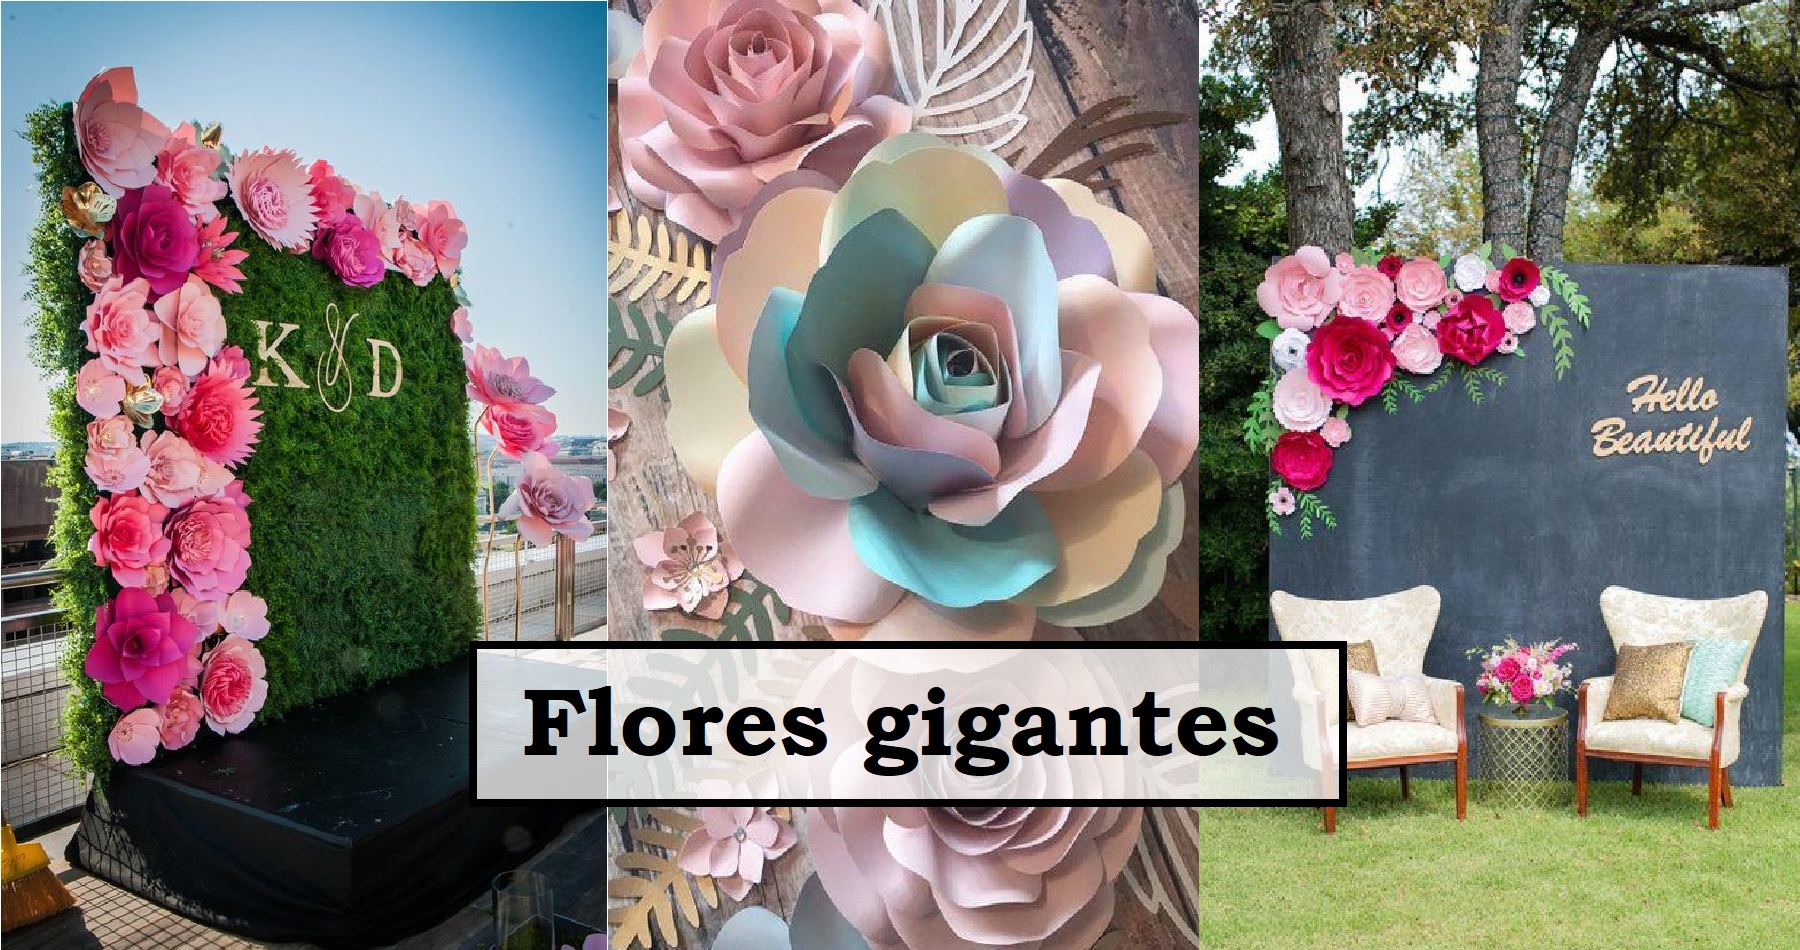 9 ideas para decorar con flores gigantes que puedes hacer tu mism@